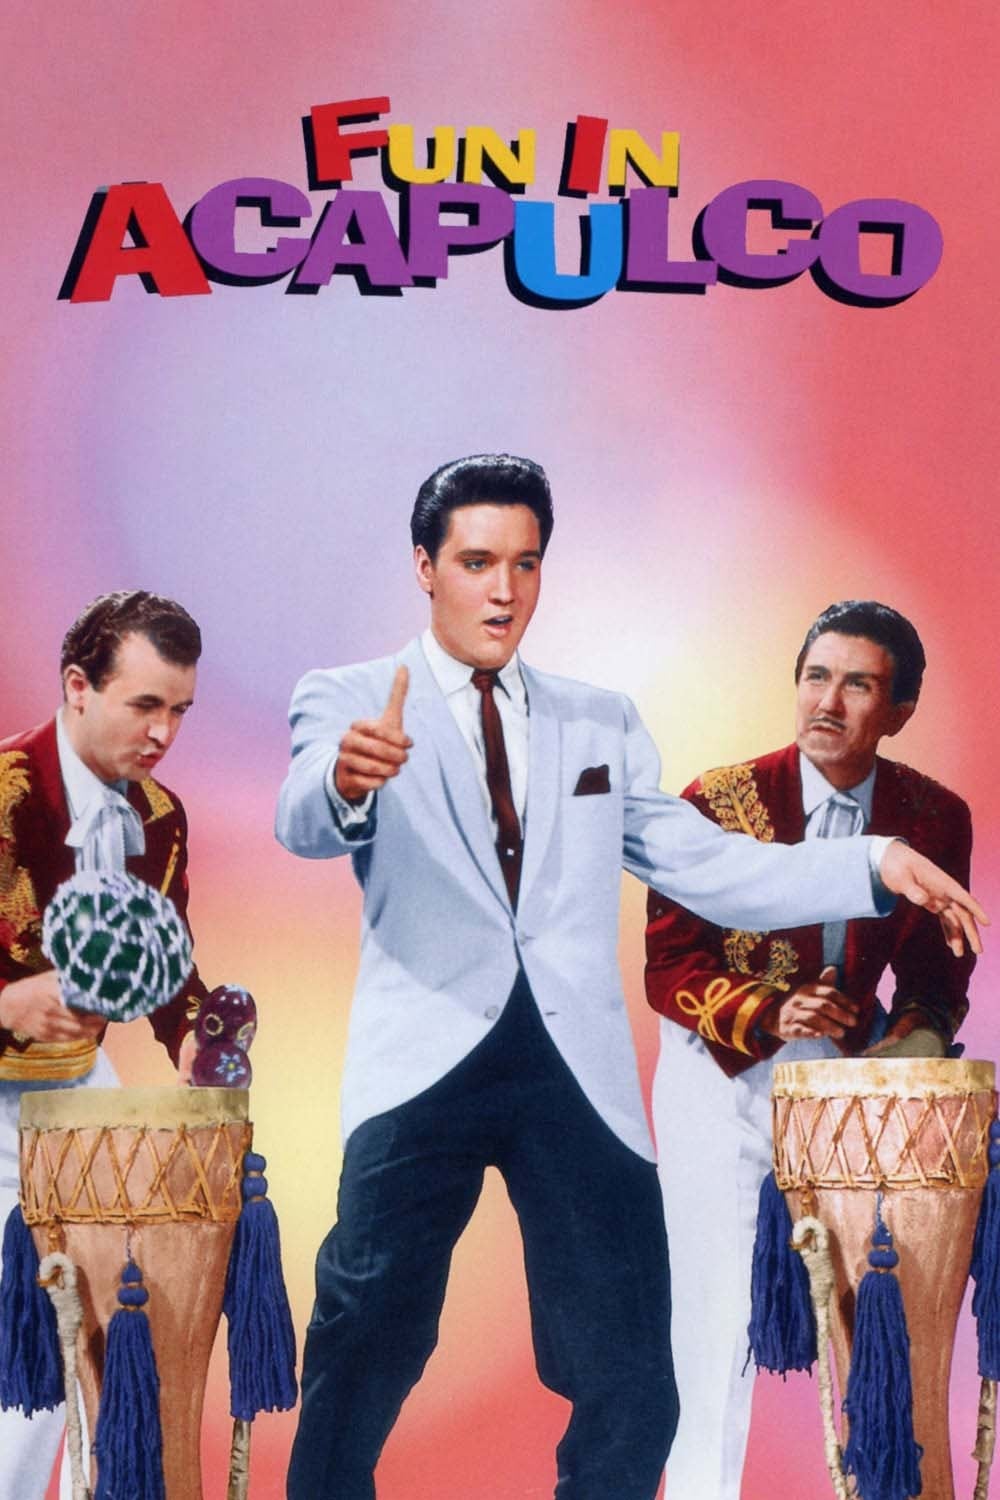 O seresteiro de Acapulco (1963)